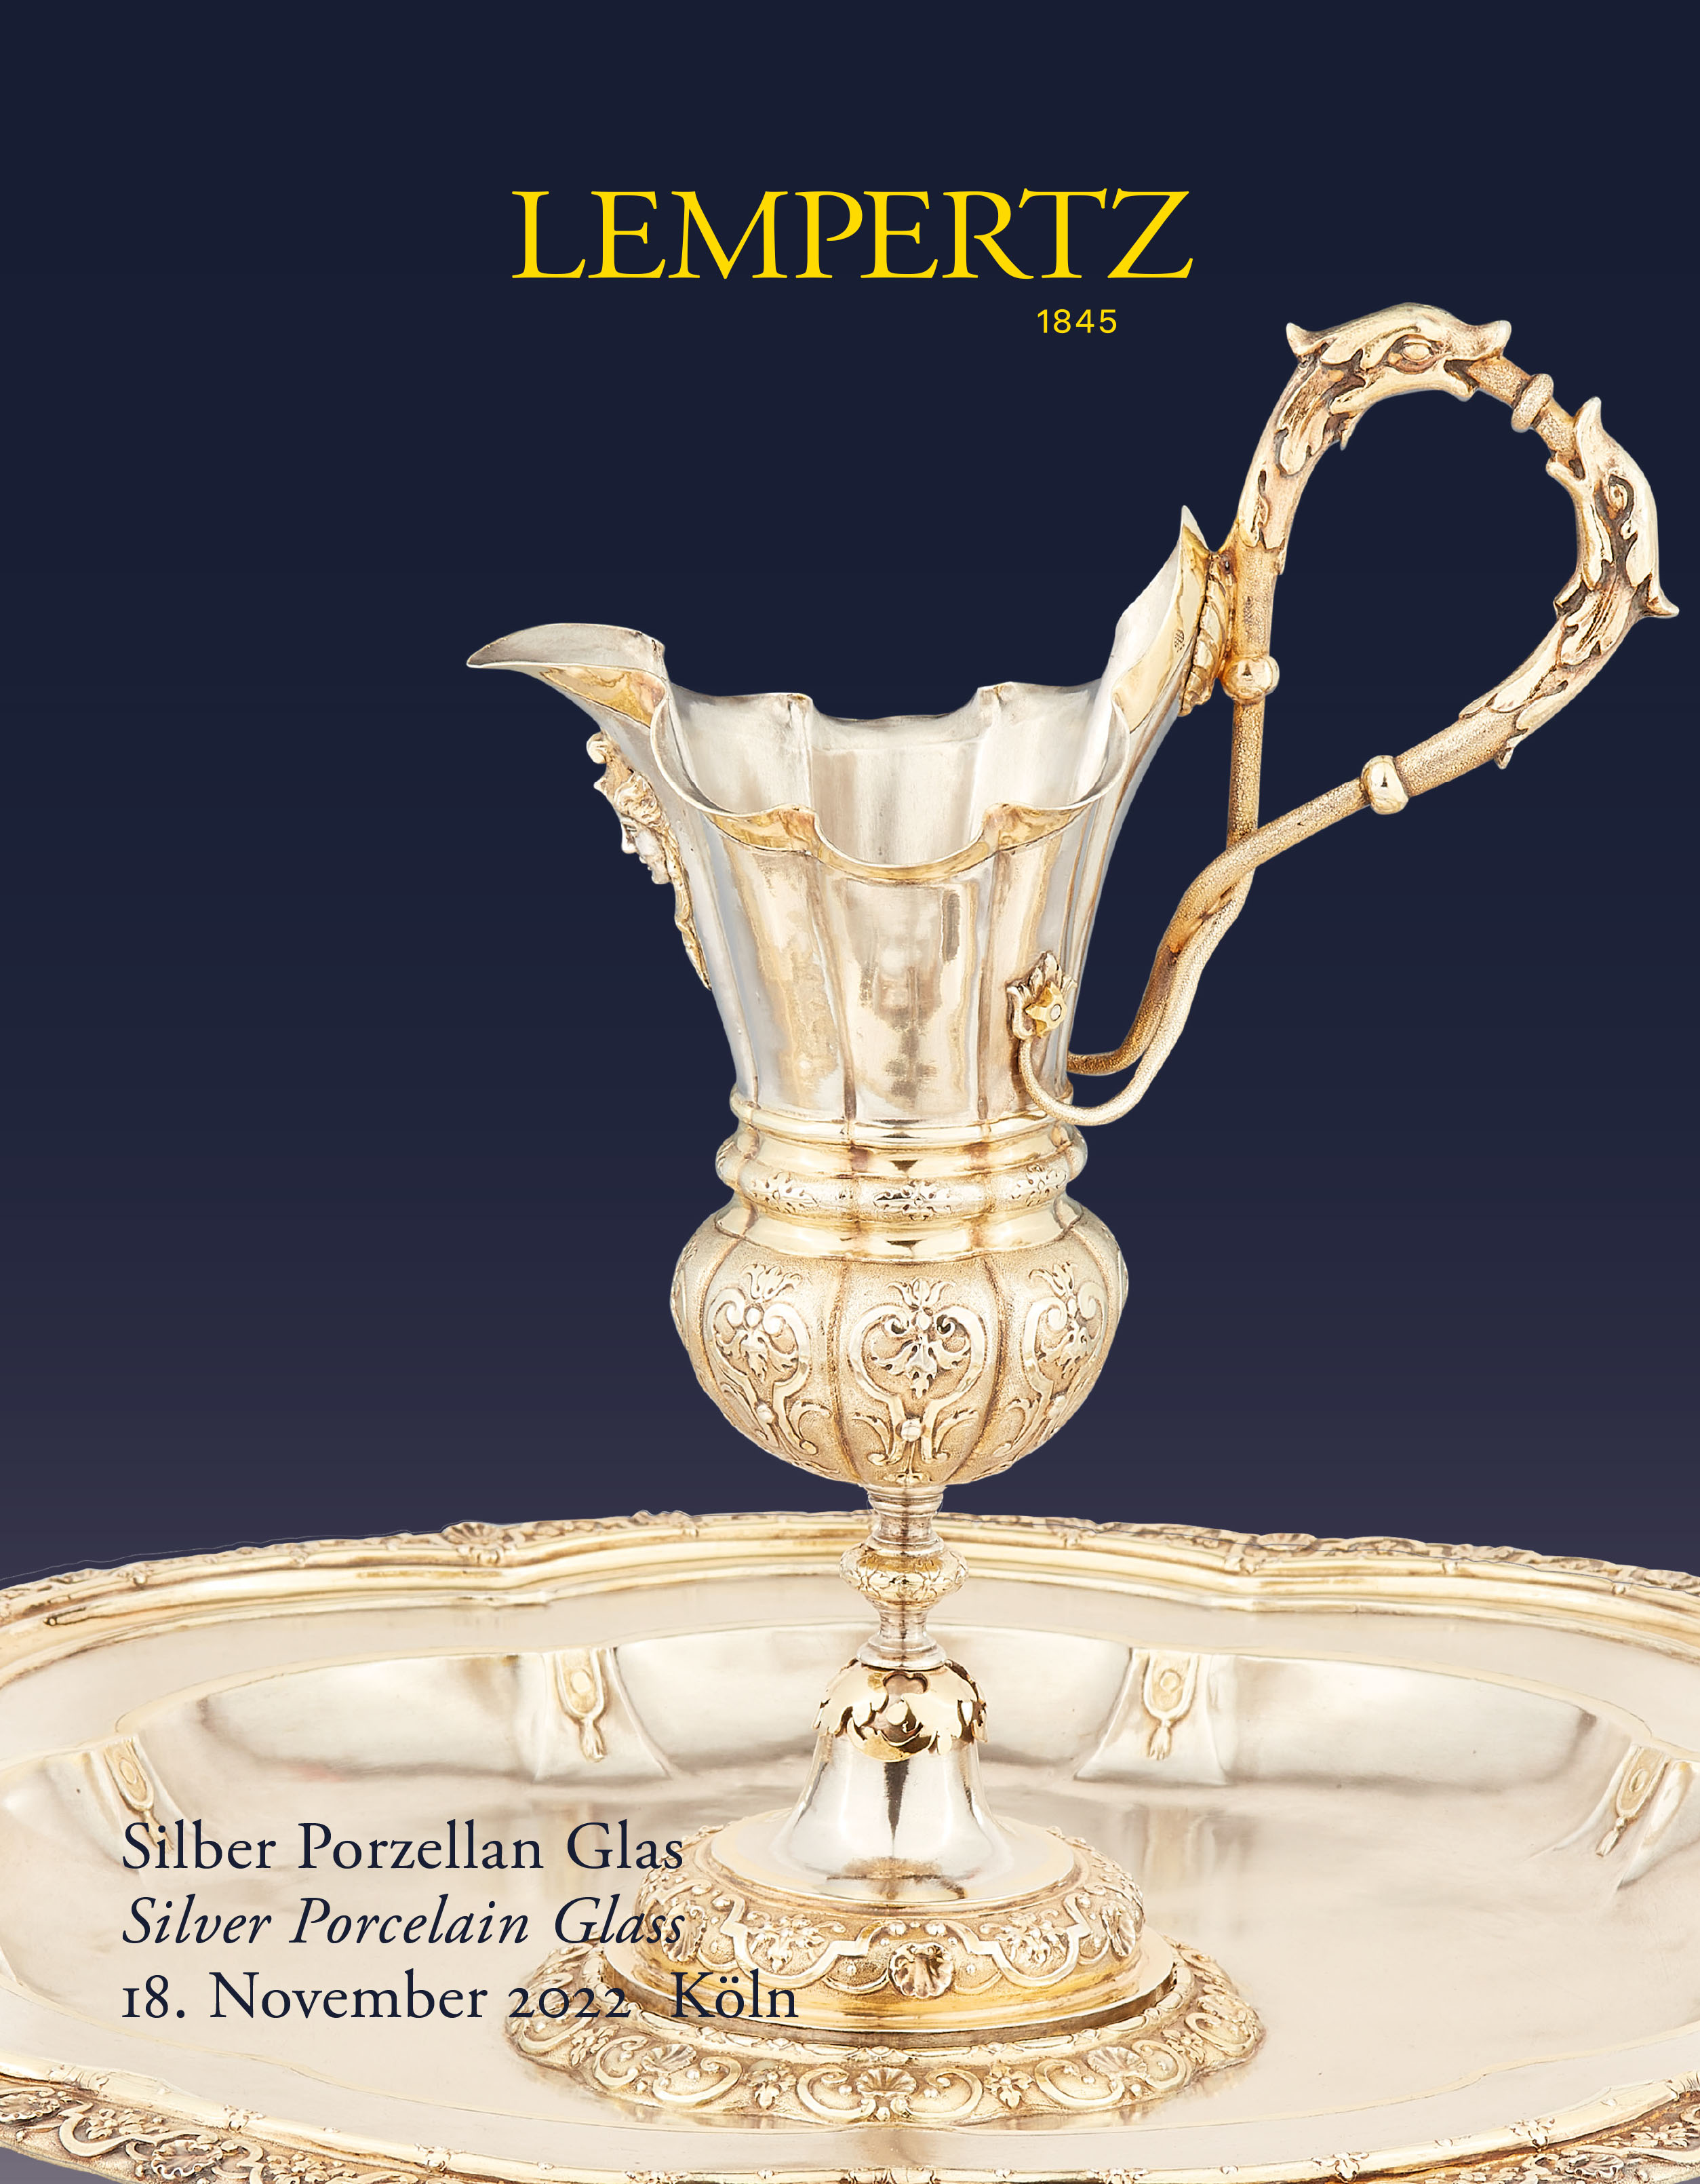 Auktionskatalog - Silber Porzellan Glas - Online Katalog - Auktion 1208 – Ersteigern Sie hochwertige Kunst in der nächsten Lempertz-Auktion!